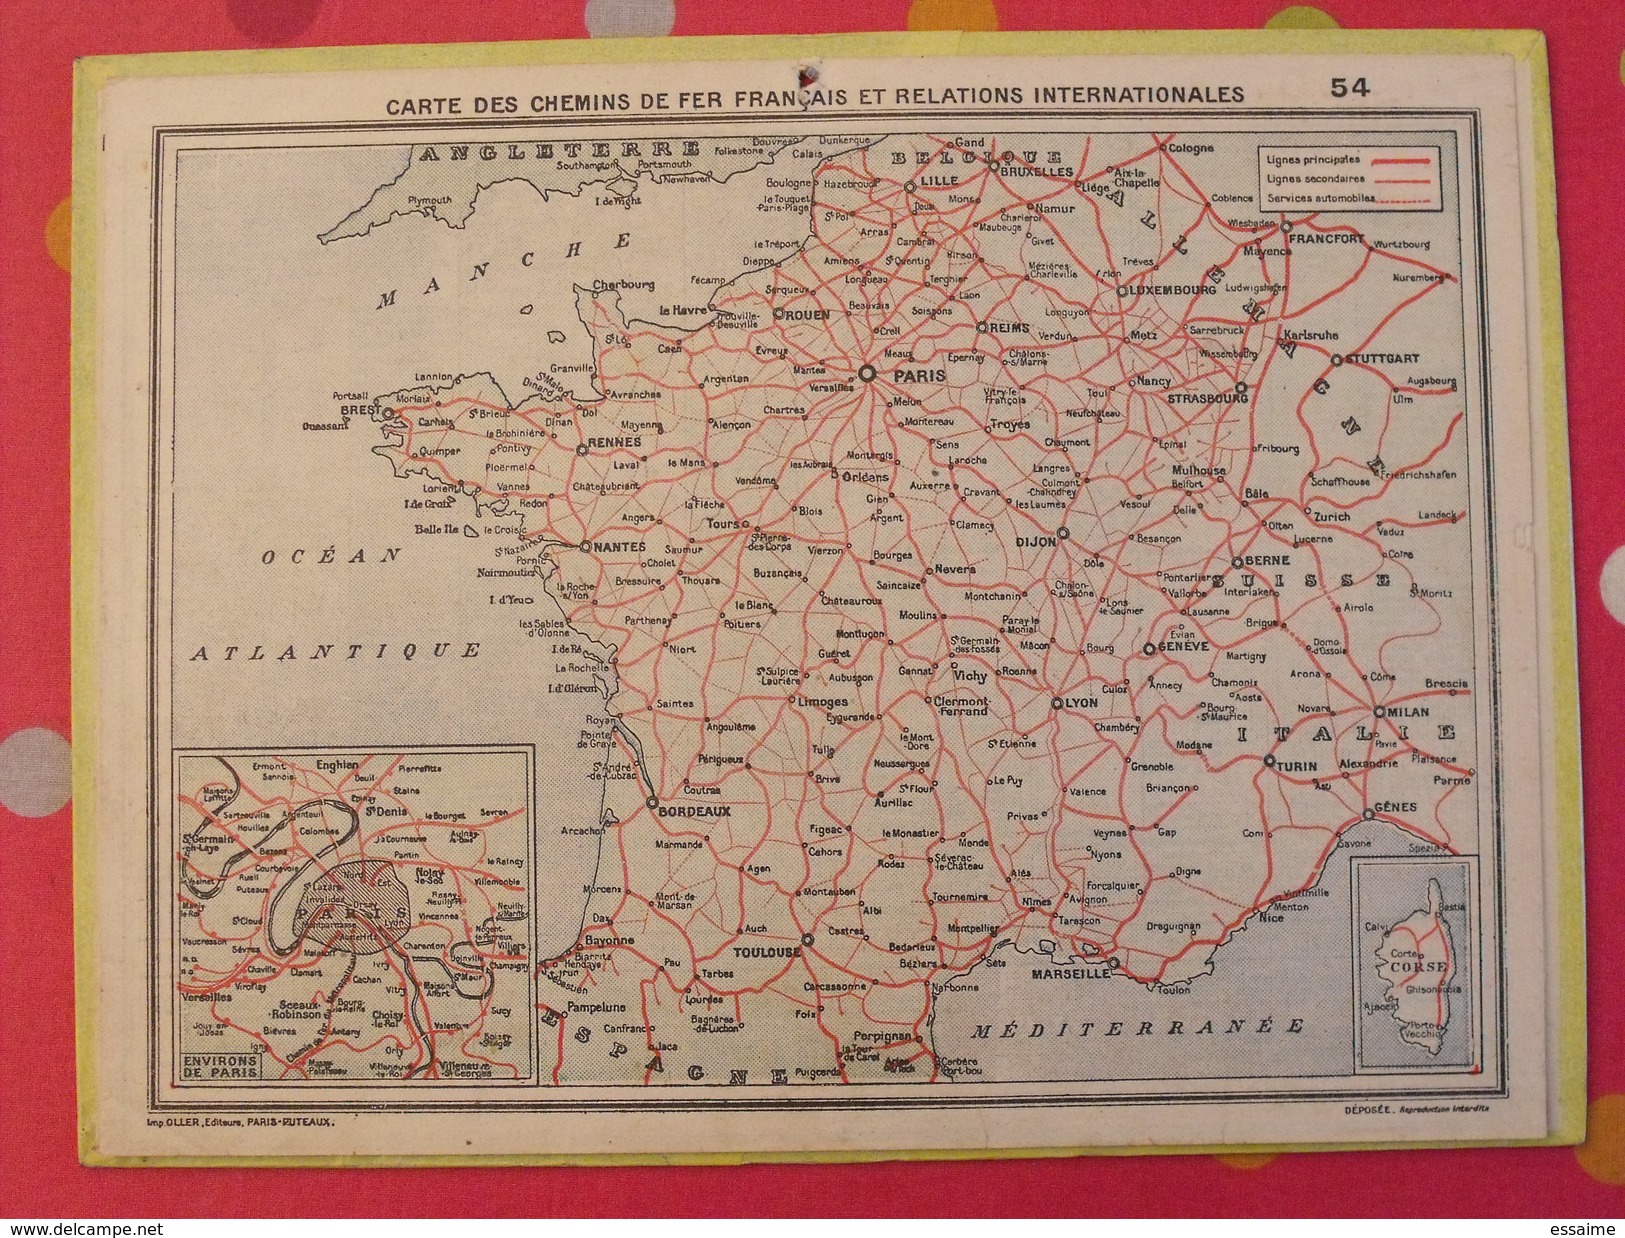 Almanach Des PTT. 1956. Calendrier Poste, Postes Télégraphes.. Enfants Plage Mer - Big : 1941-60